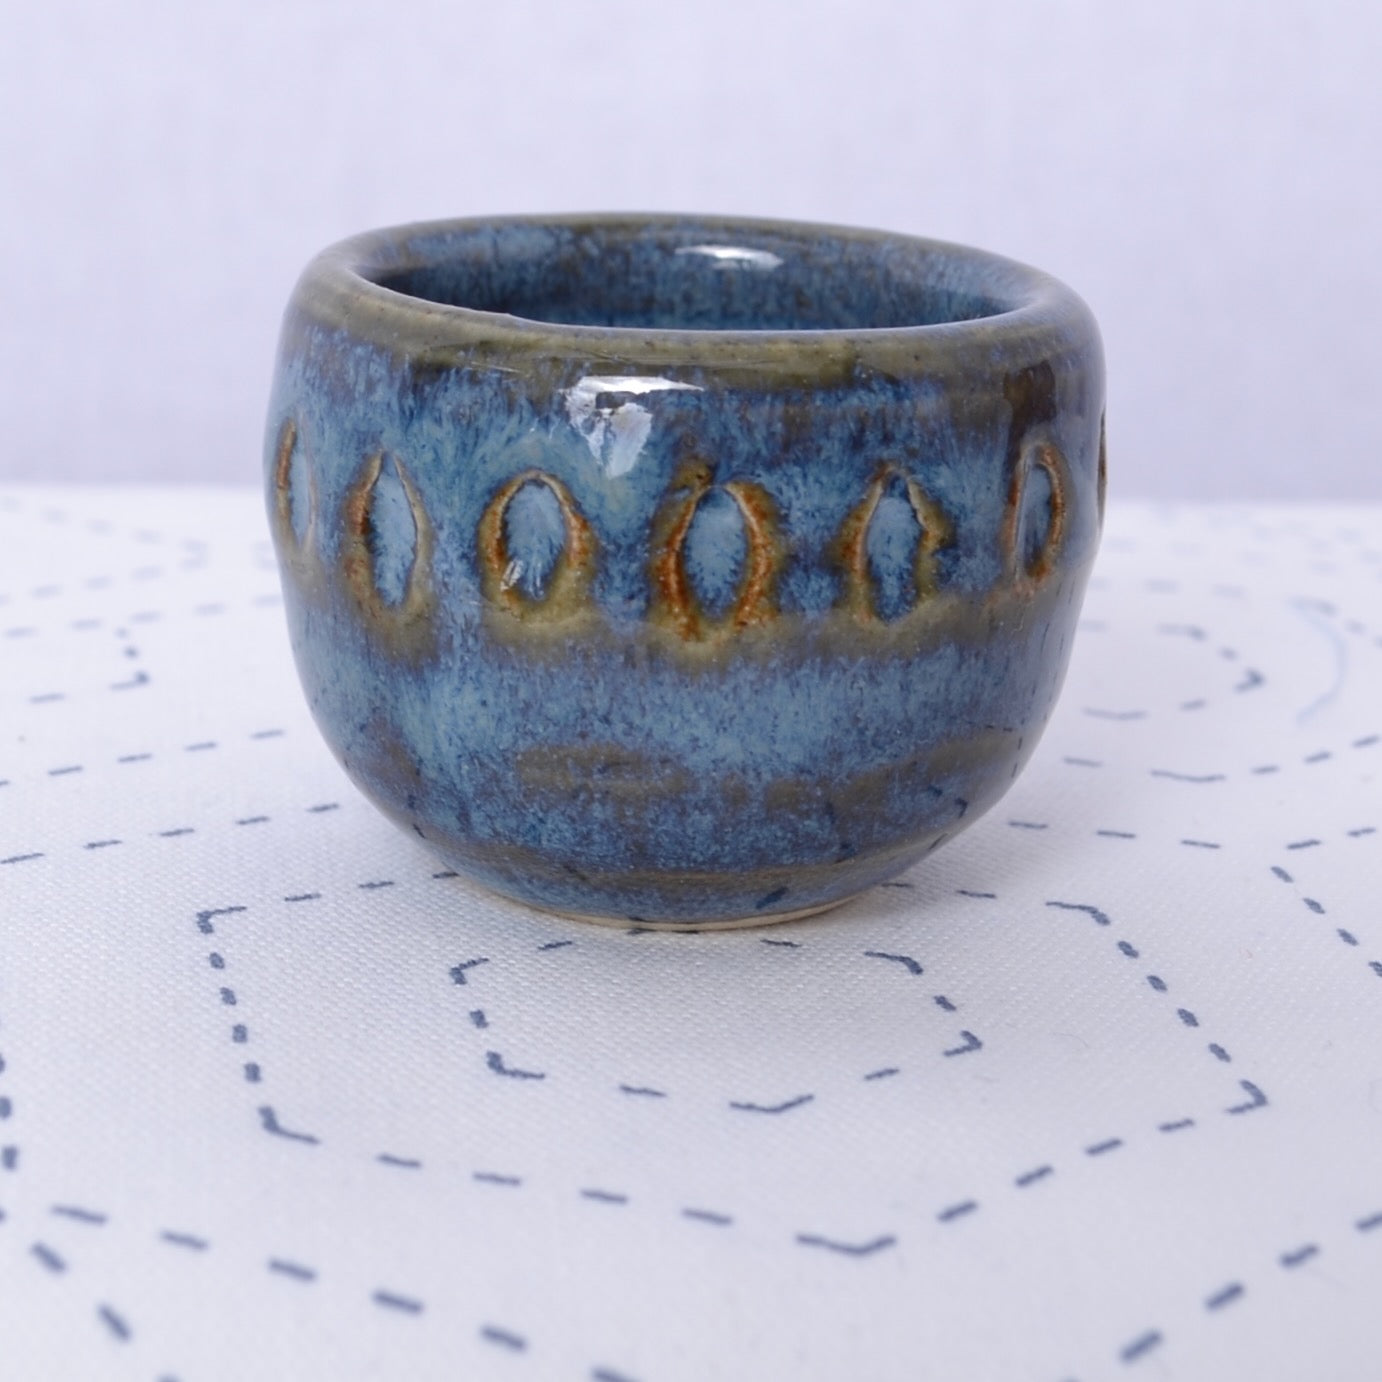 1.5" ceramic bowl